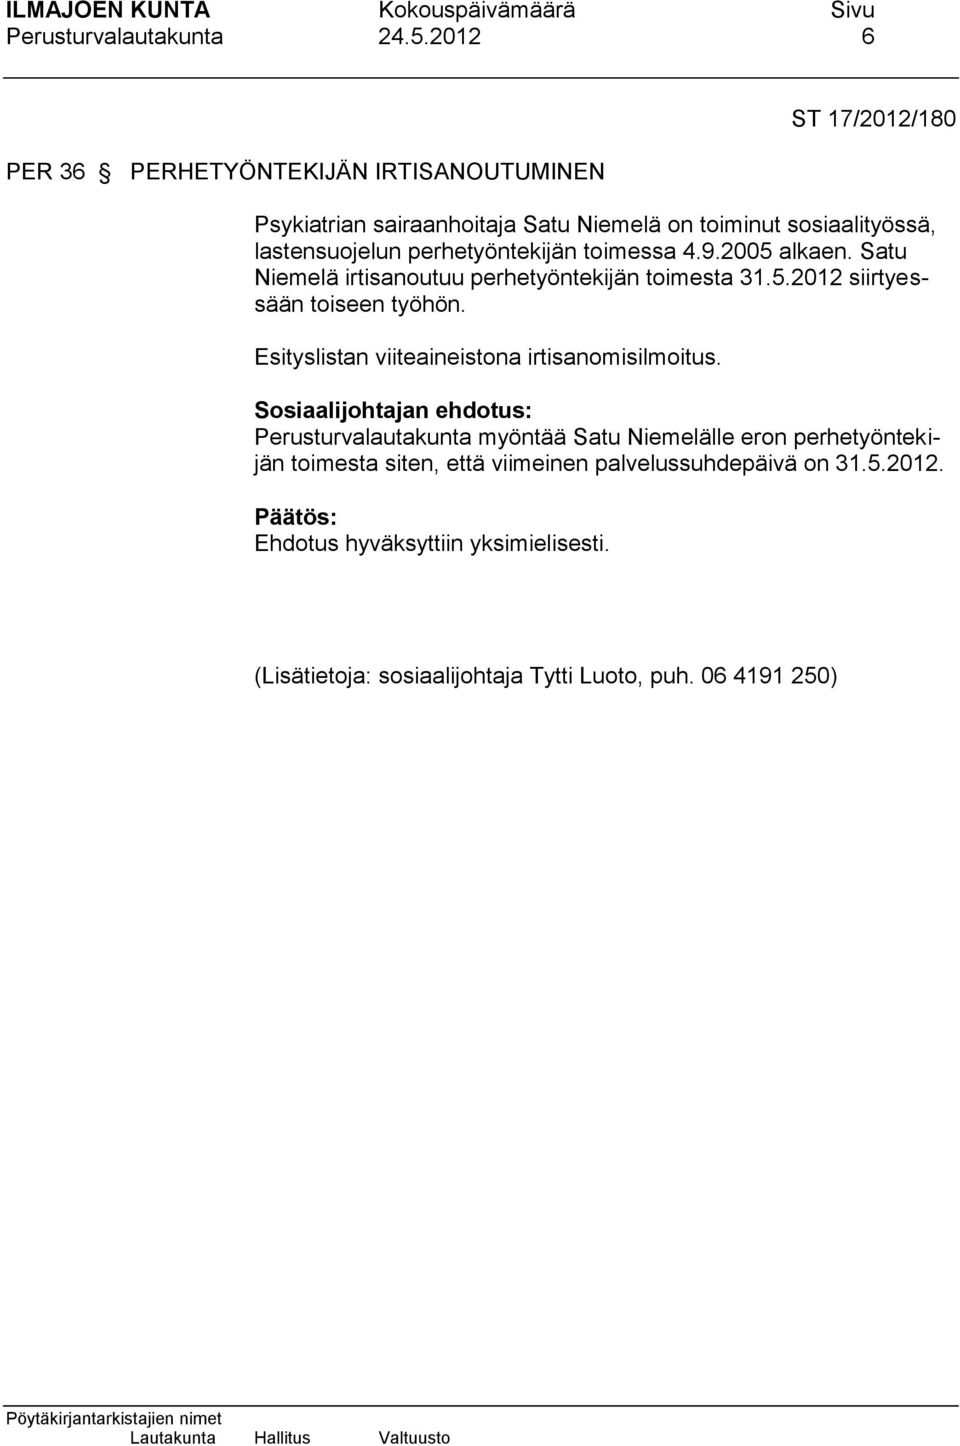 lastensuojelun perhetyöntekijän toimessa 4.9.2005 alkaen. Satu Niemelä irtisanoutuu perhetyöntekijän toimesta 31.5.2012 siirtyessään toiseen työhön.